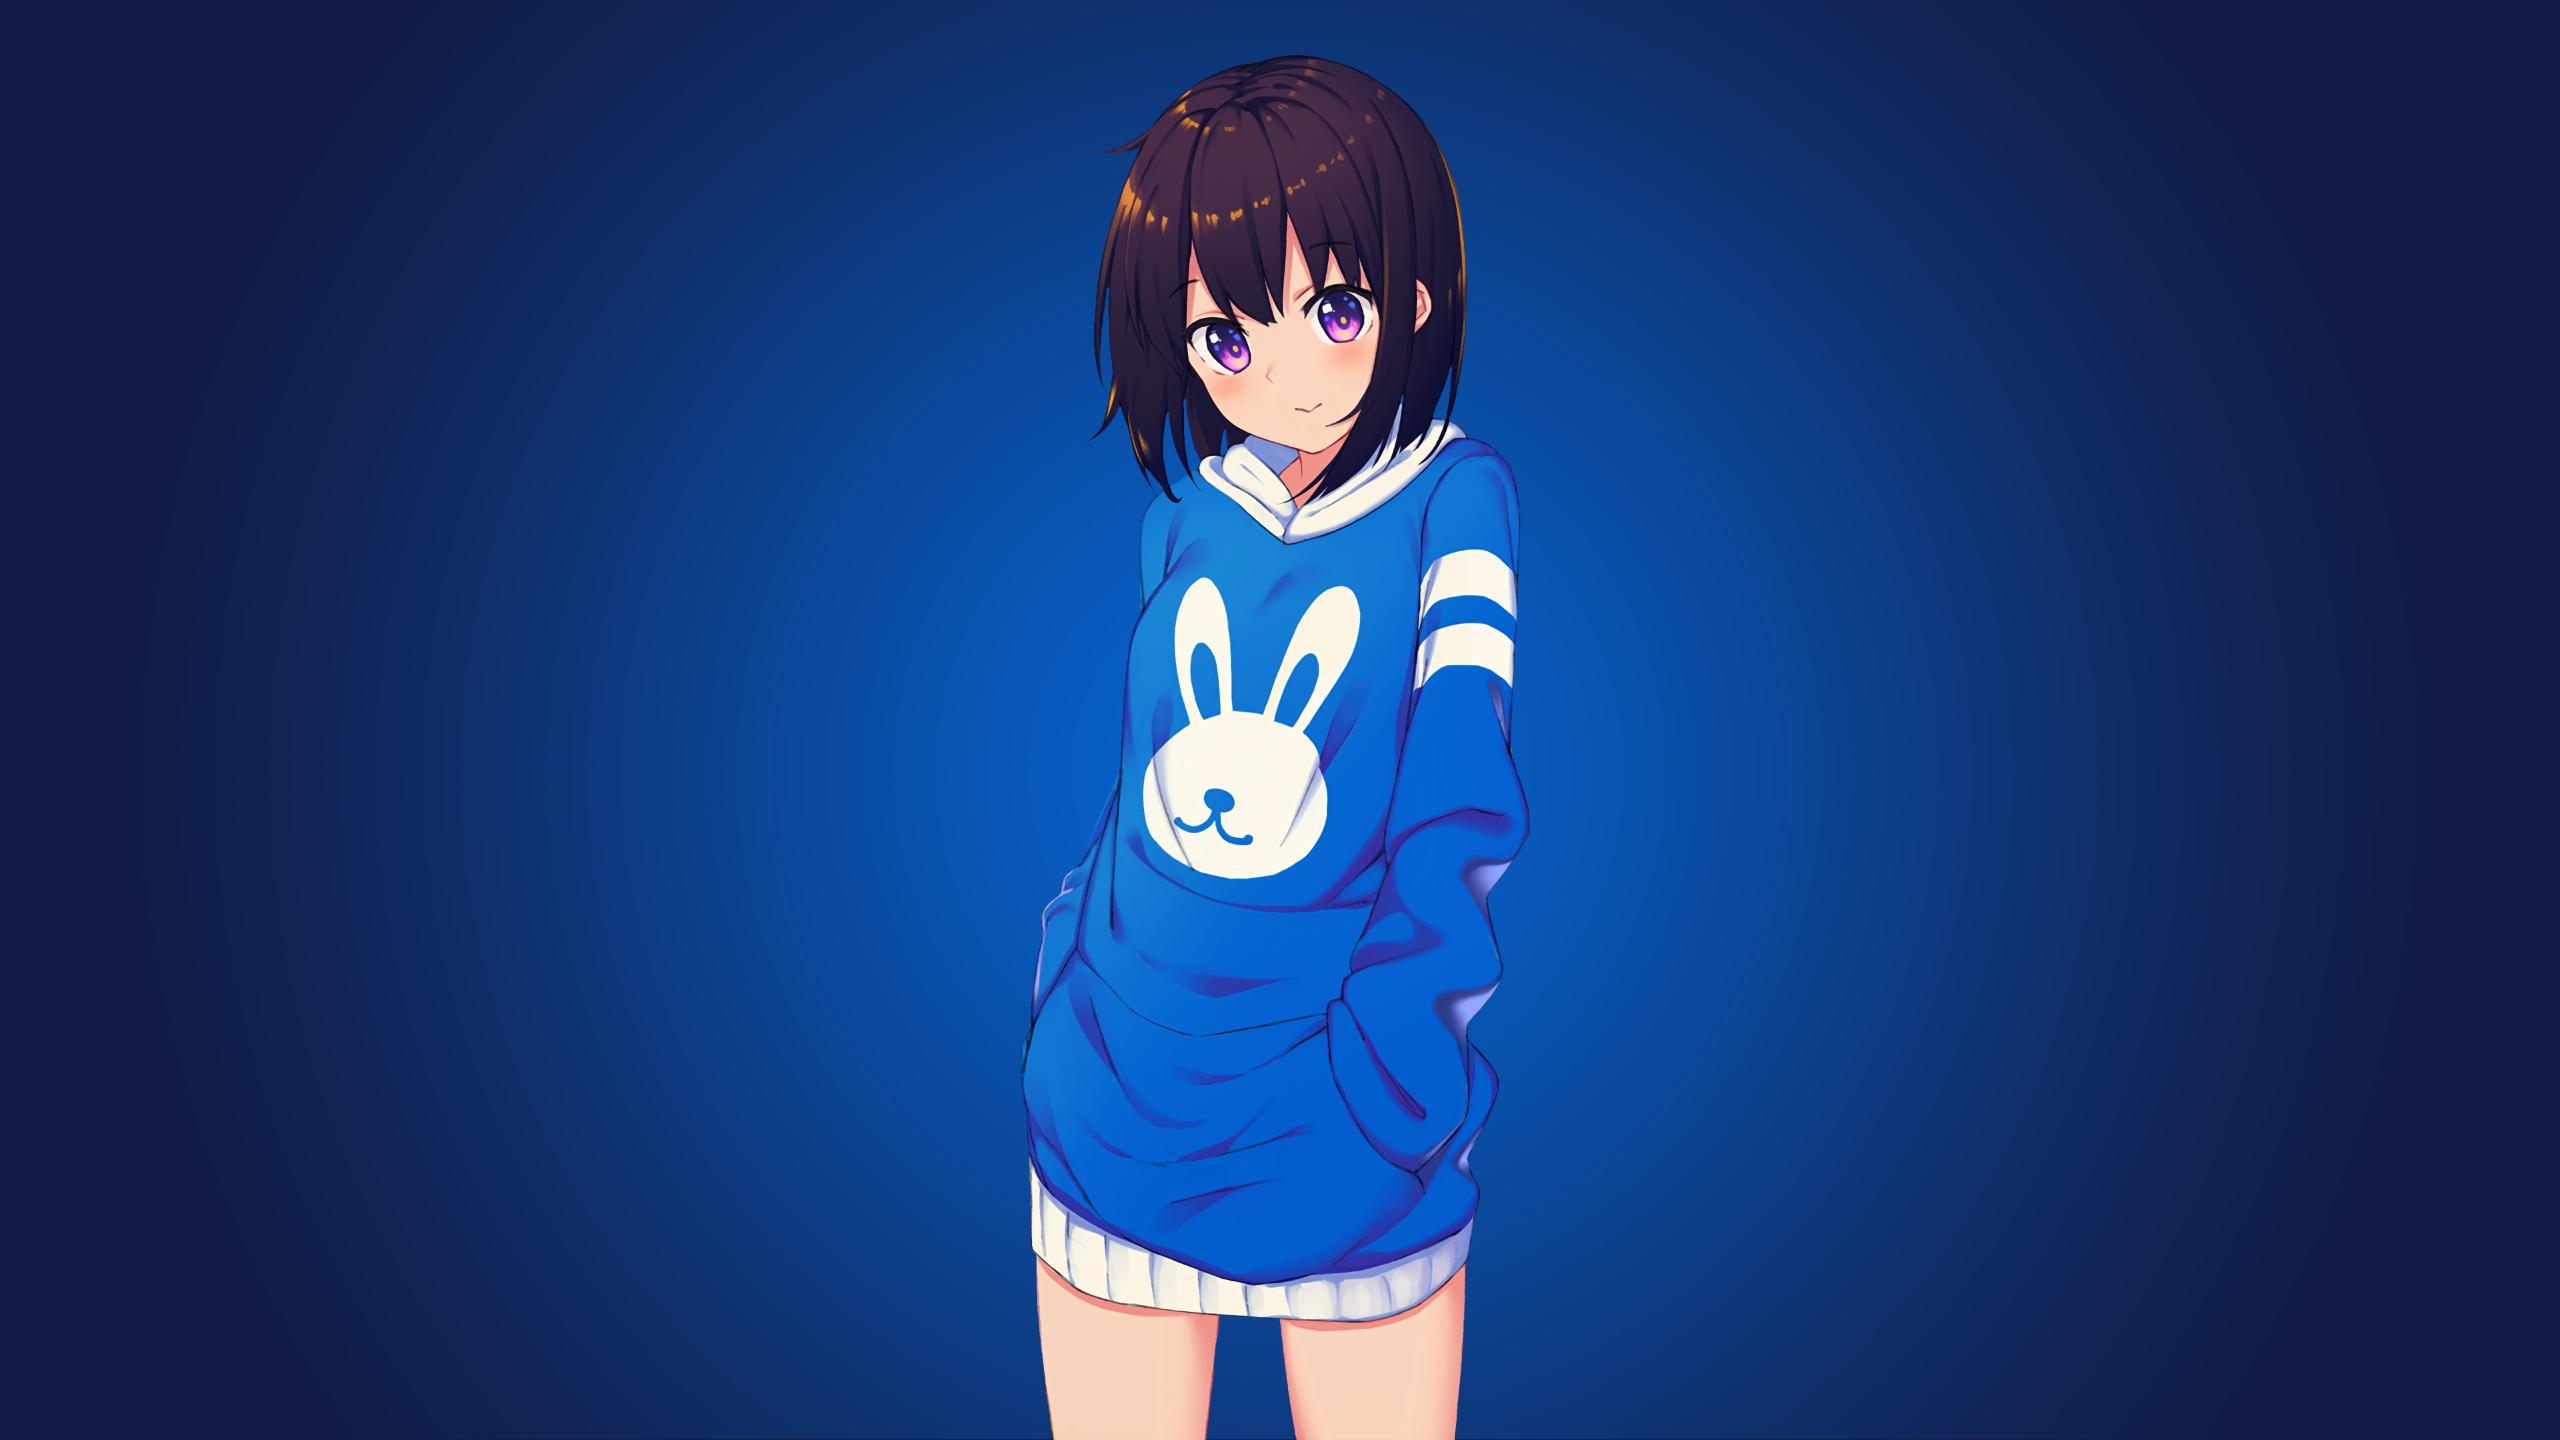 Bunny Anime Girl 1440P Resolution Wallpaper, HD